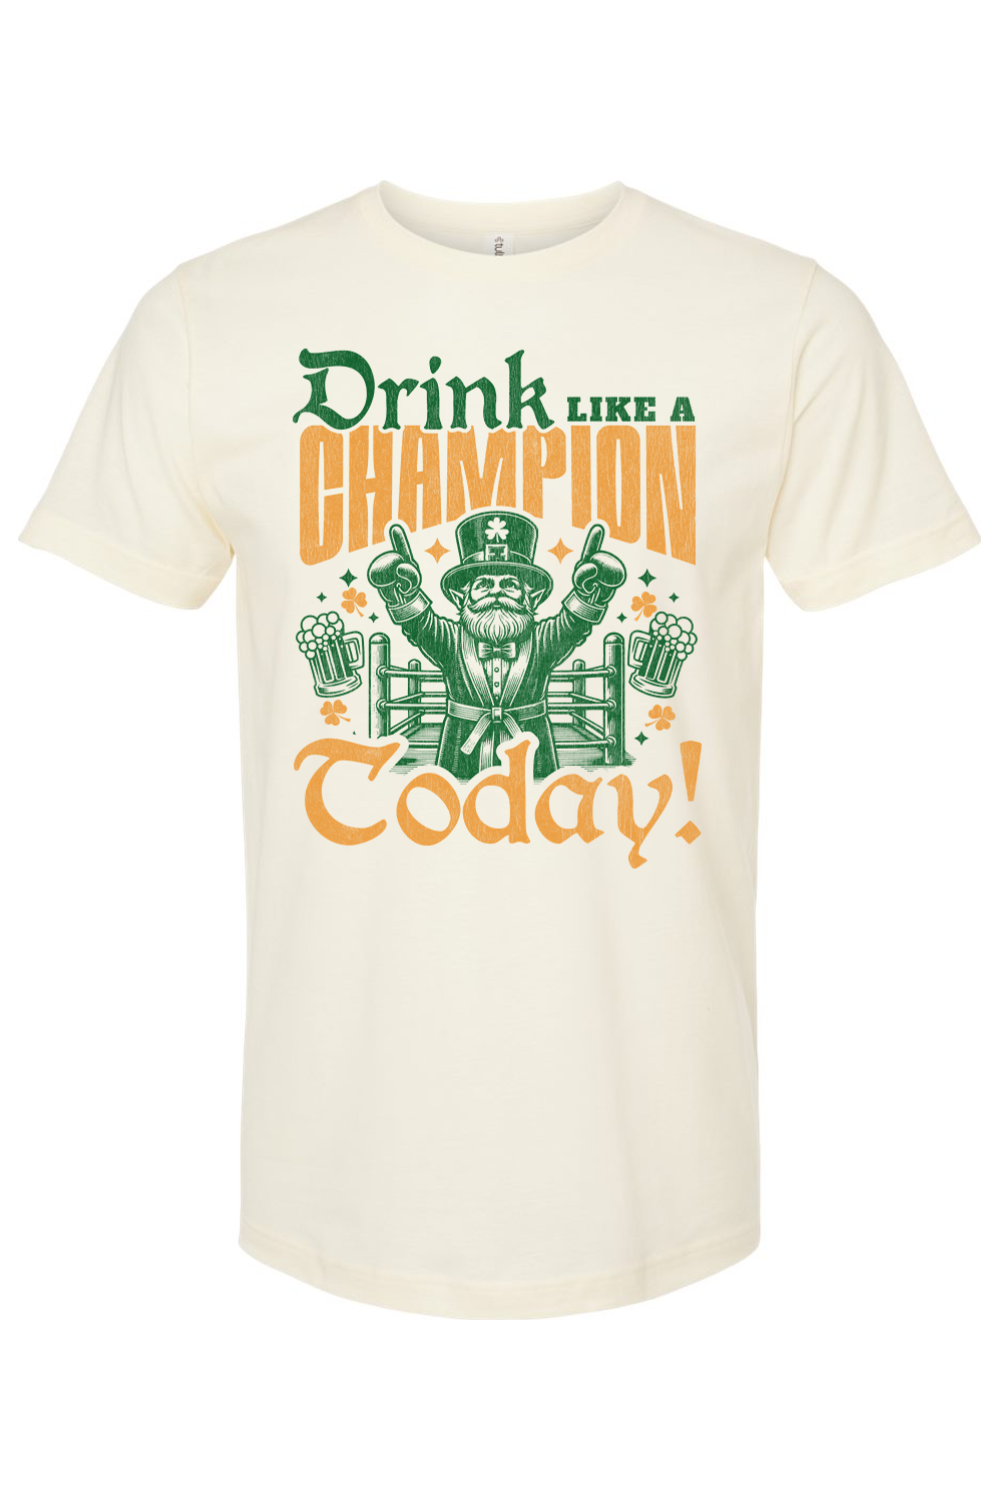 Drink Like a Champion Today! - Yinzylvania